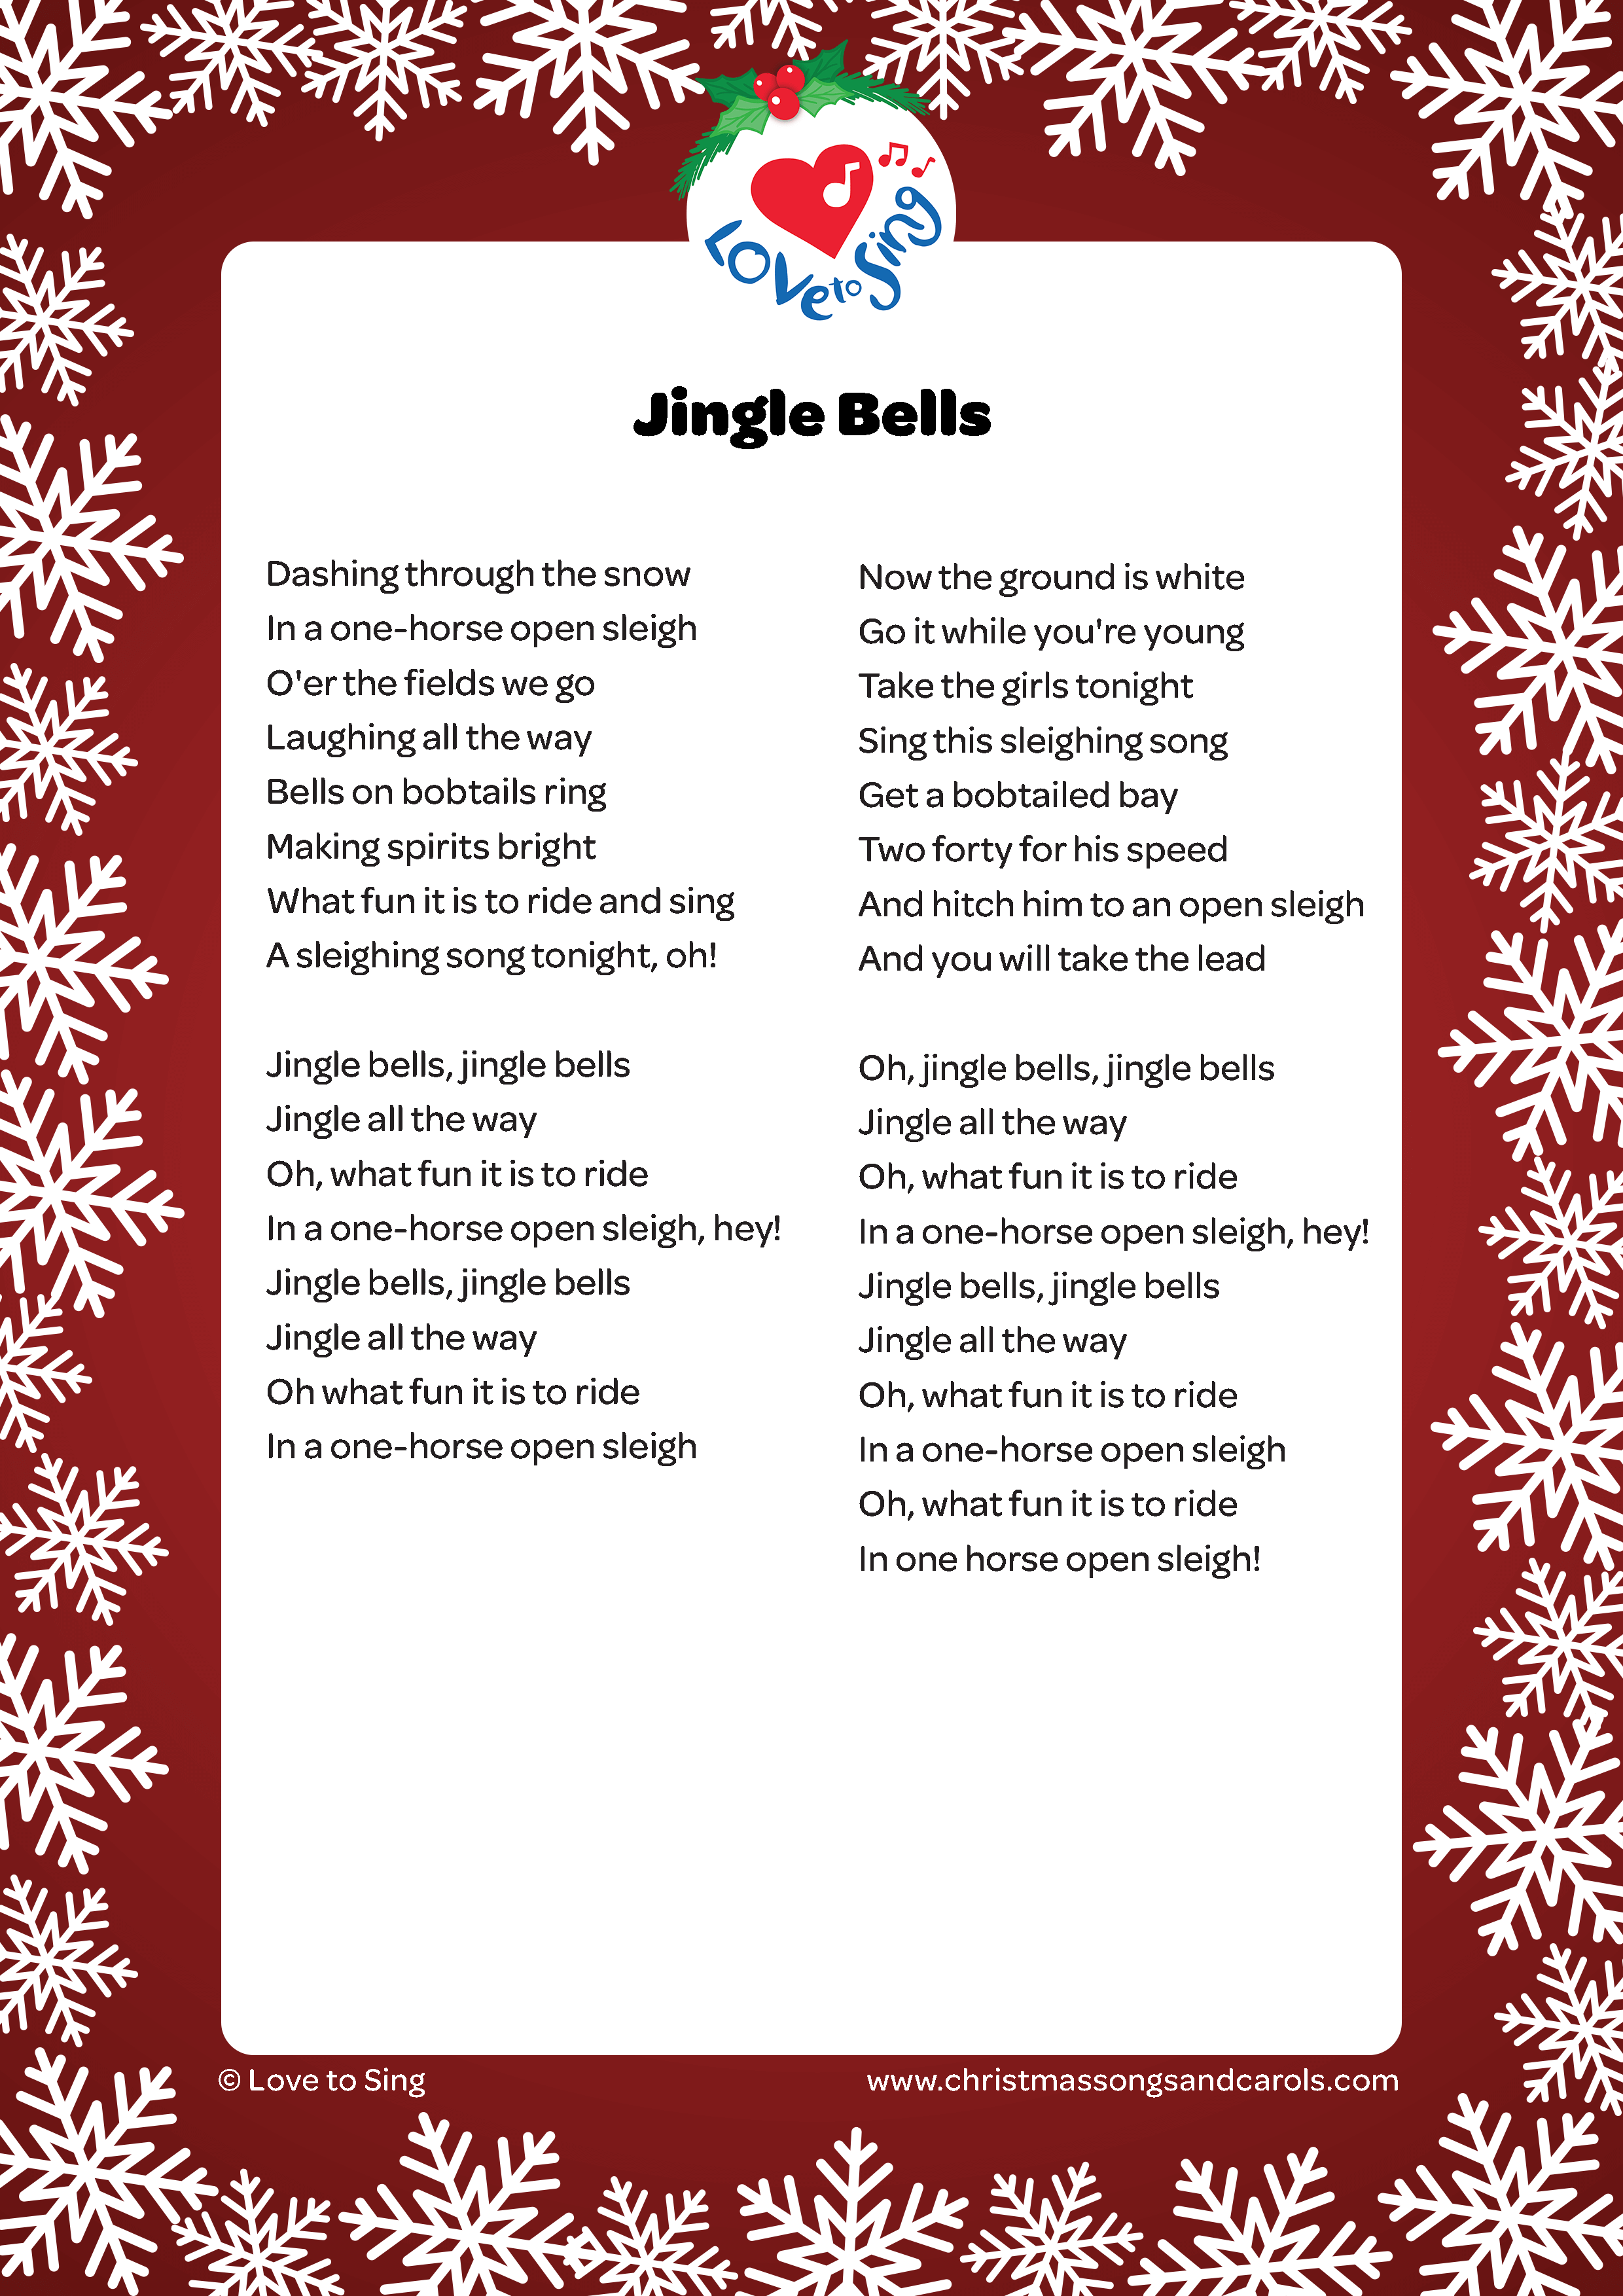 Jingle Bell Rock Lyrics Printable Printable Word Searches